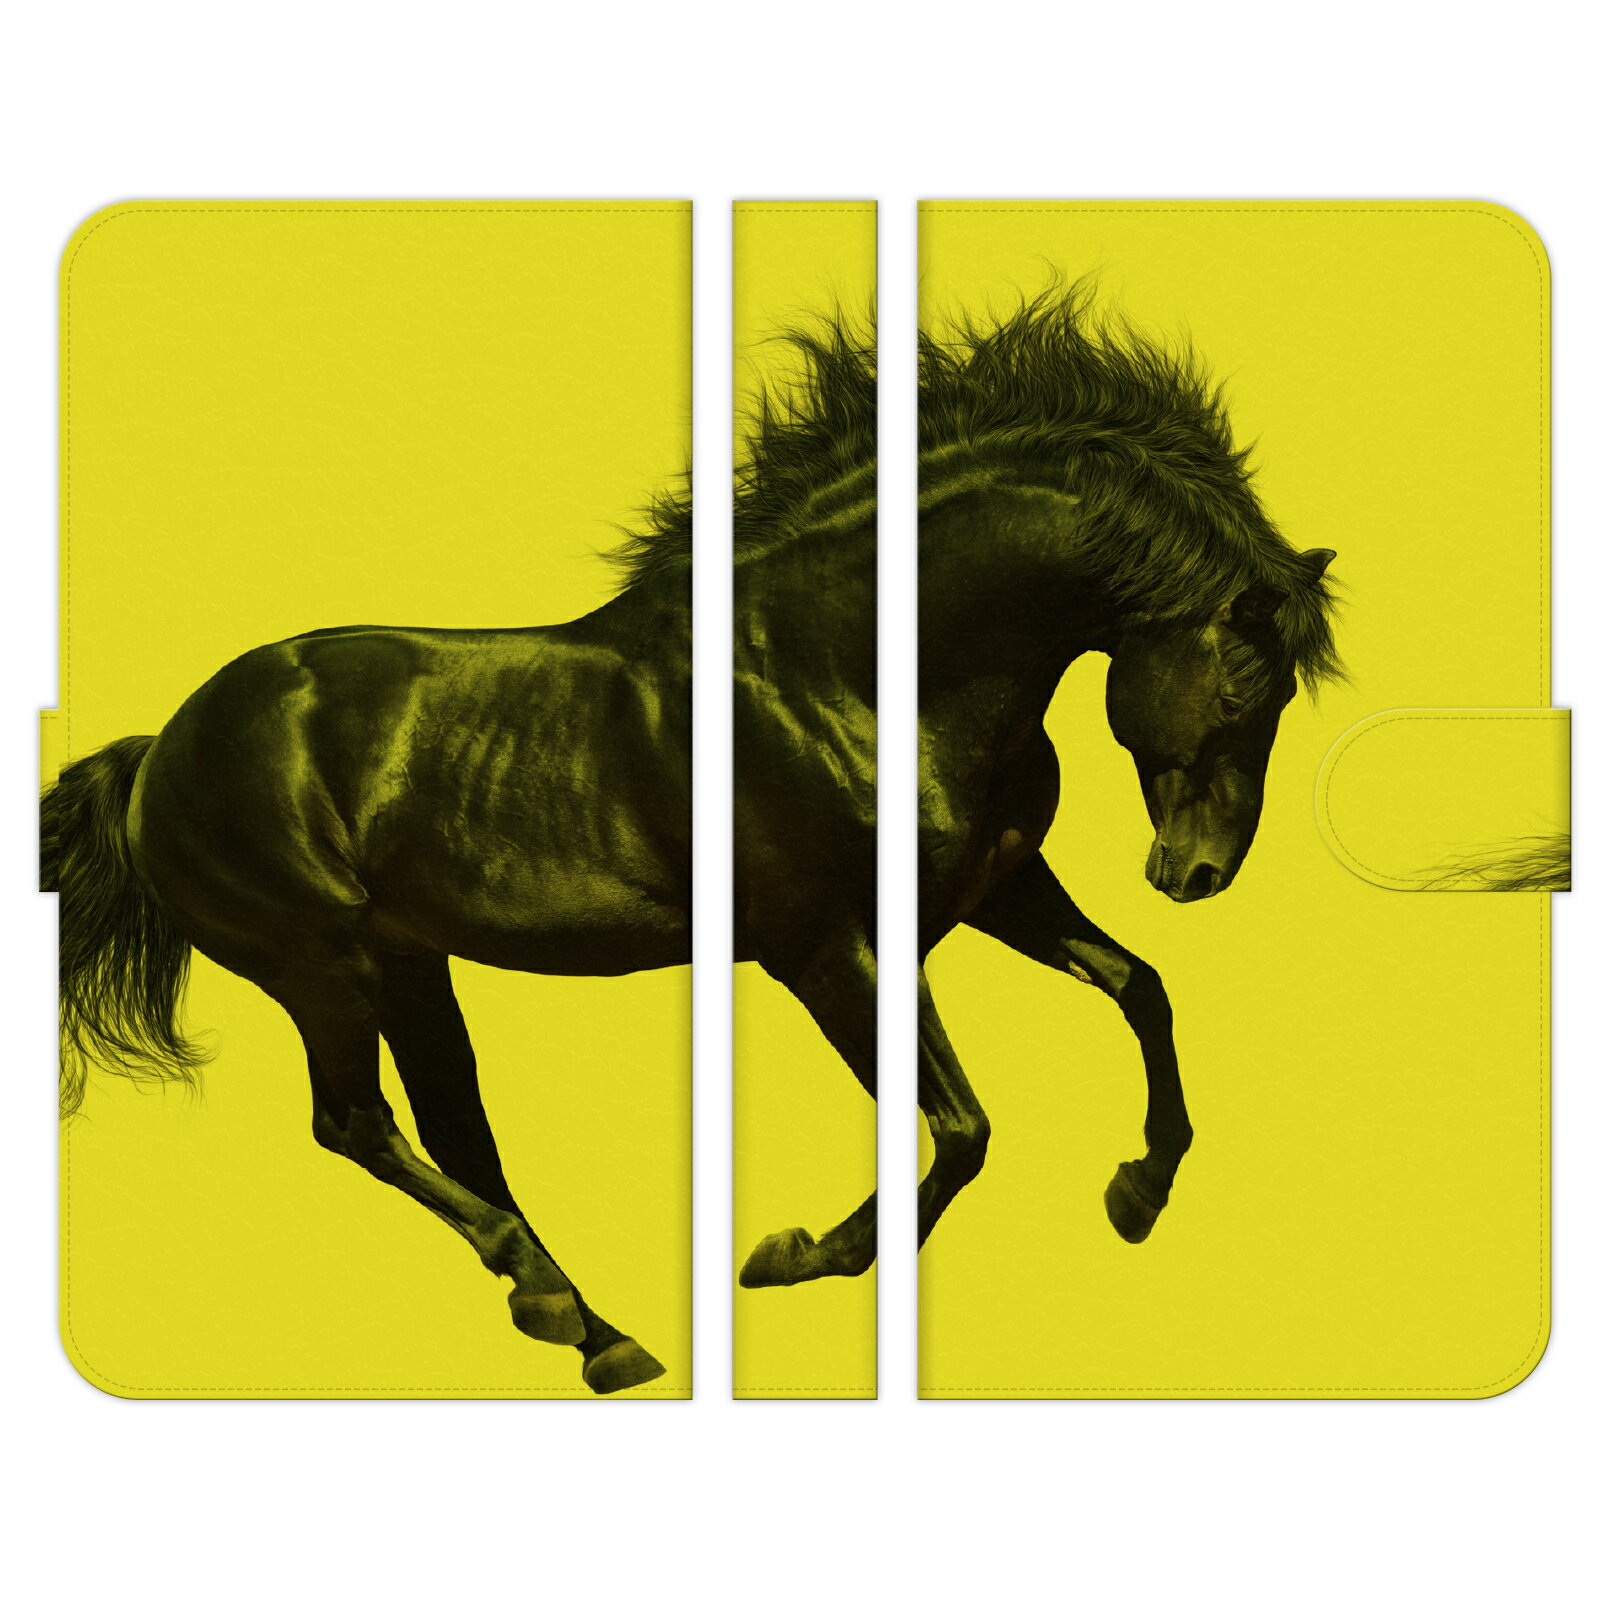 AQUOS sense4 SH-41A SH-M15 手帳型 スマホ ケース カバー REAL HORSE イエロー 競馬 競走馬 乗馬 カッコいい 馬 サラブレッド グッズ アクオス センス4 スマートフォン スマホケース スマートフォンケース スマフォケース Android アンドロイド ハードケース ケースカバー